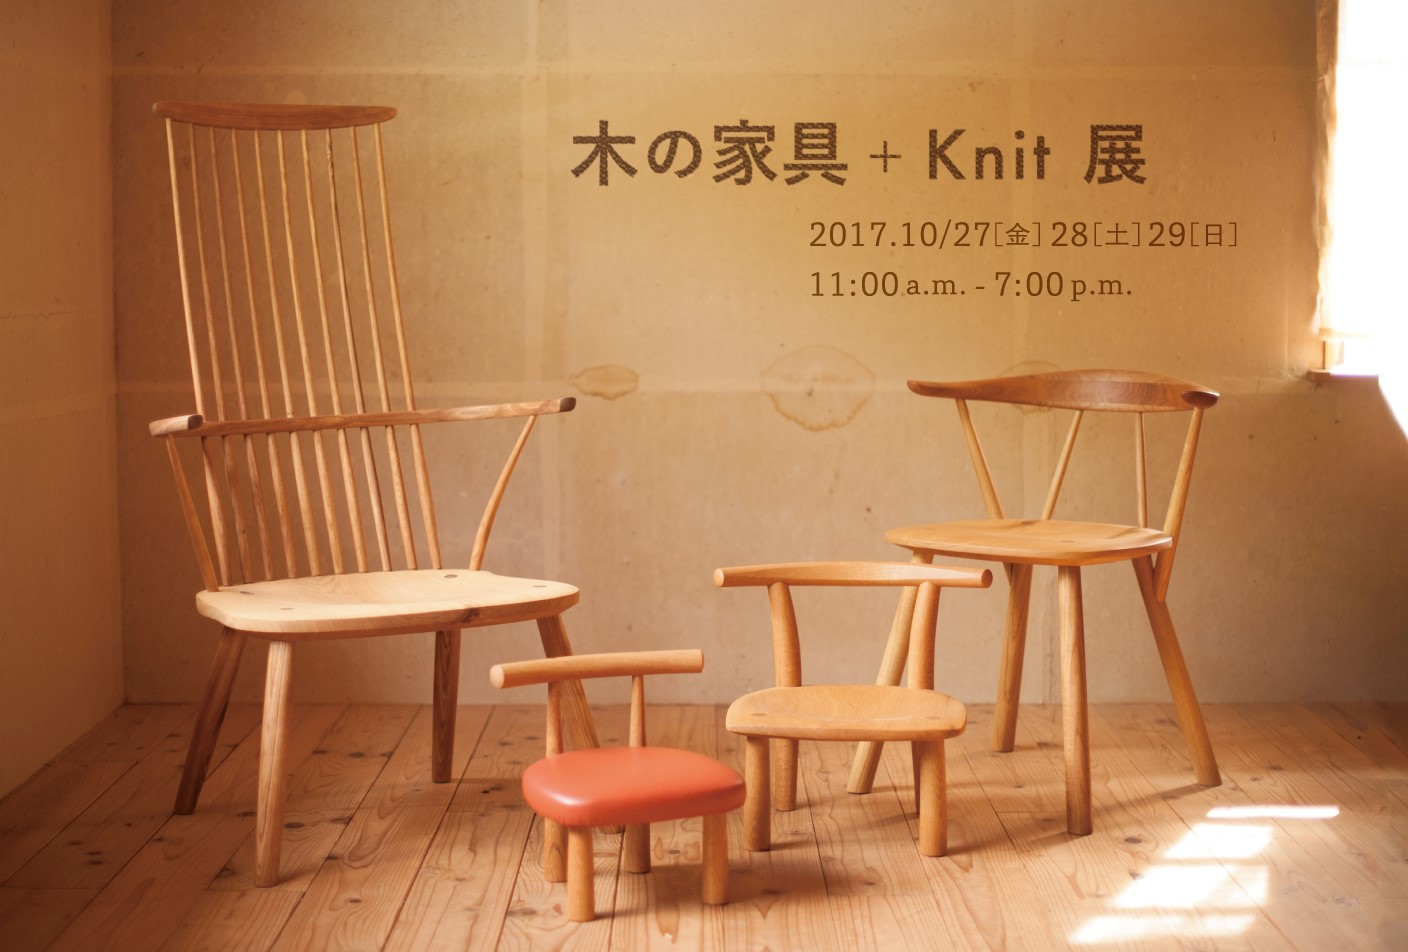 木の家具 Knit展 Gallery Iro 吉祥寺のギャラリー